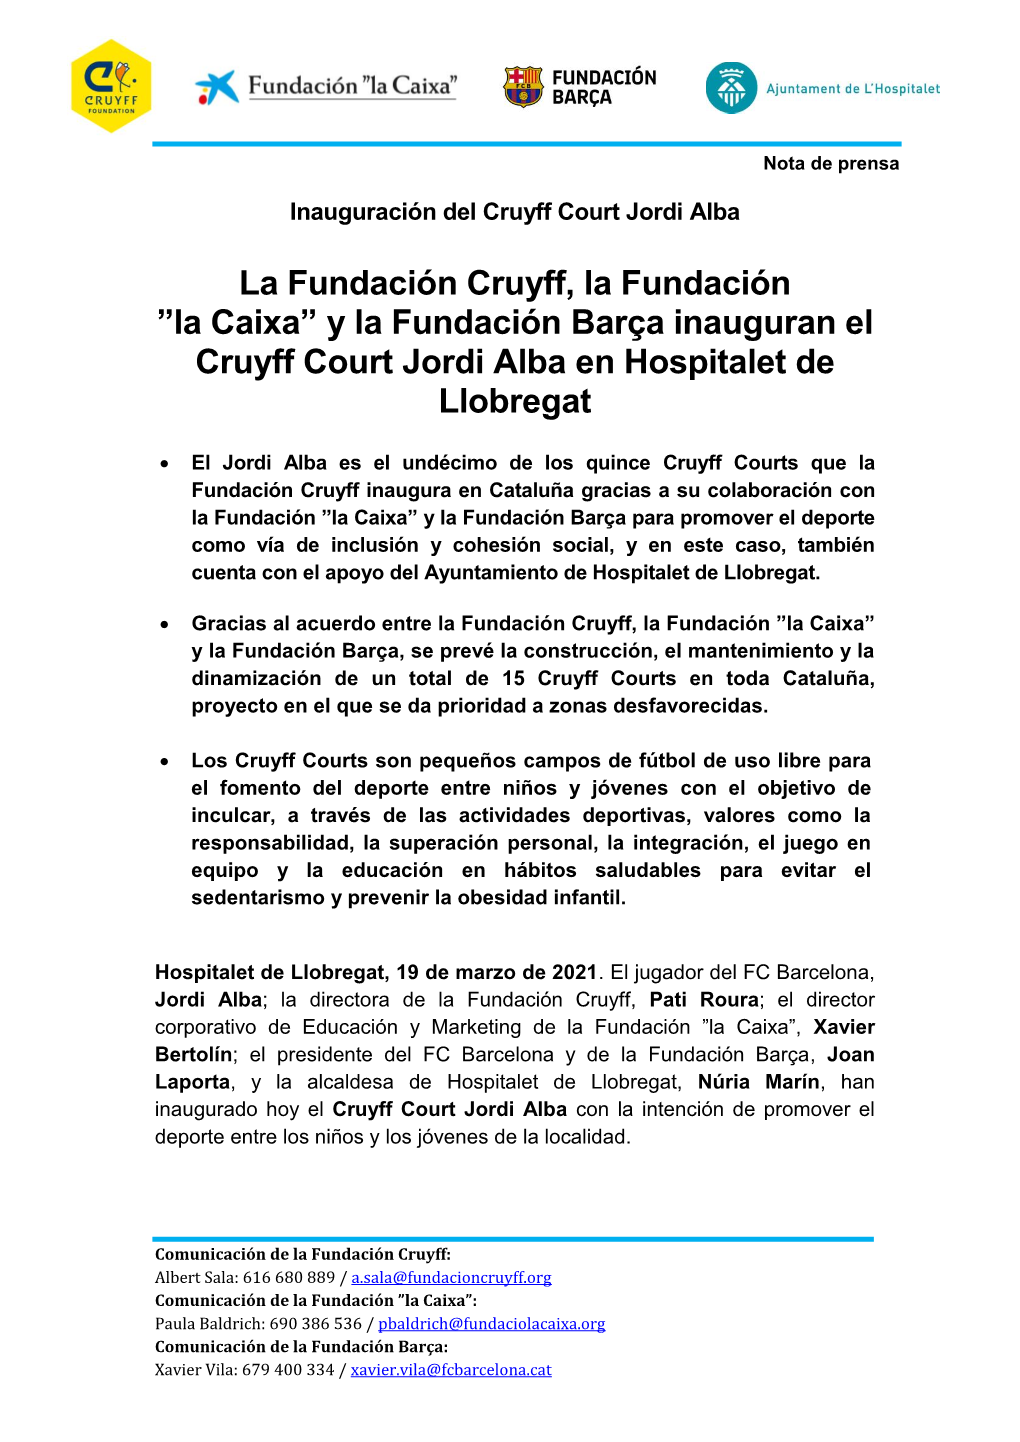 Cruyff Court Jordi Alba L'hospitalet De Llobregat Fundación